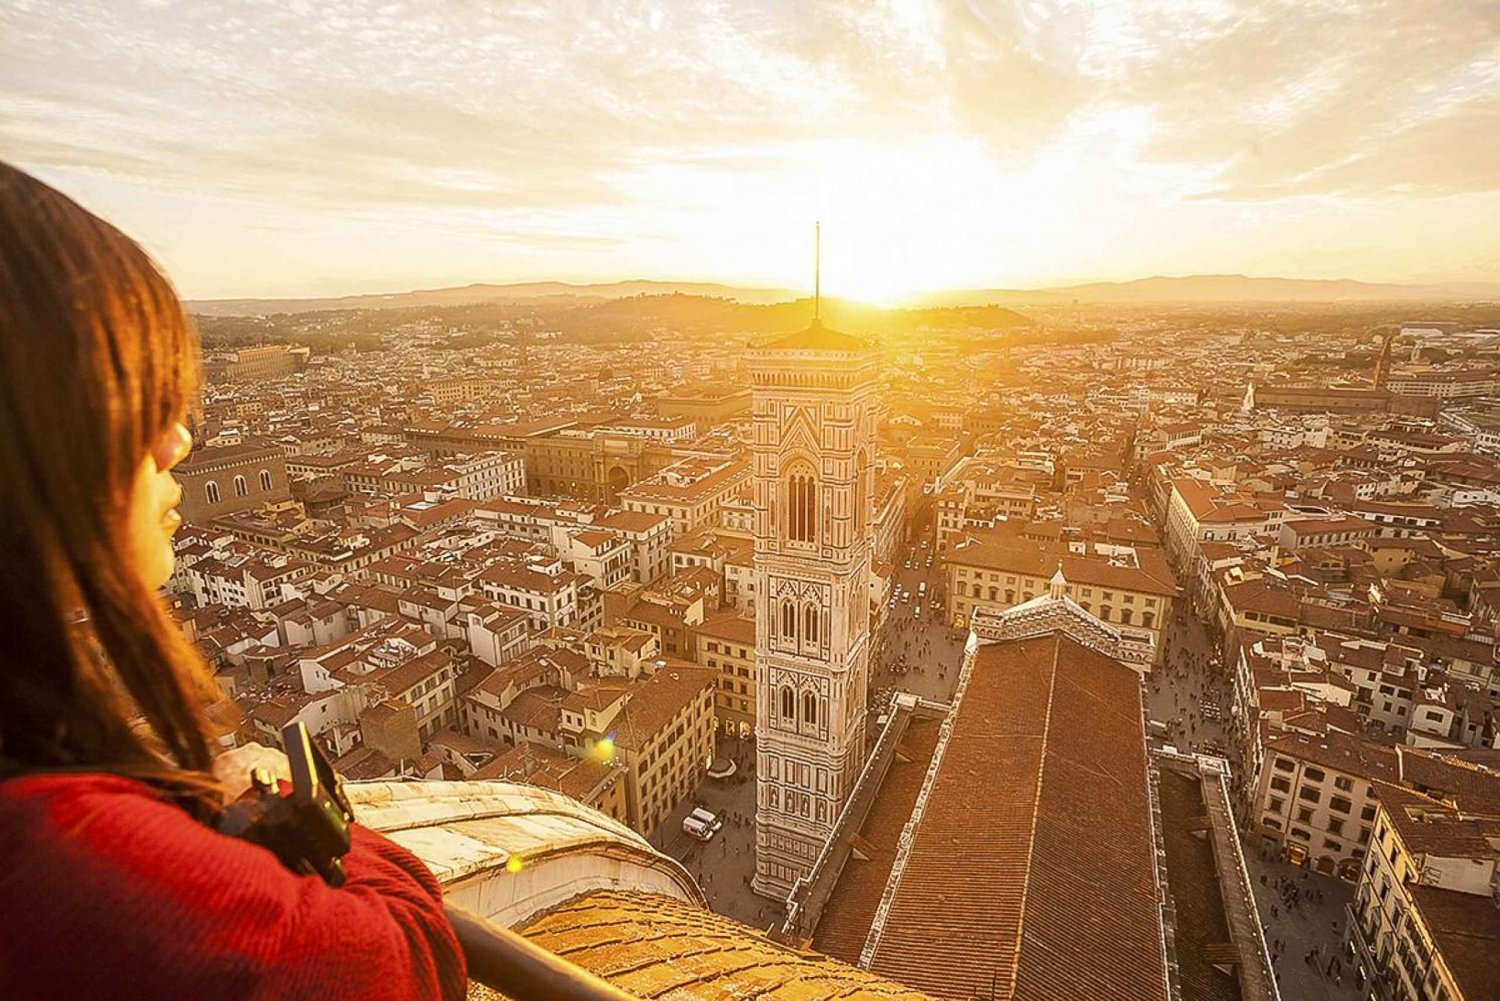 Firenze: Tour guidato della cattedrale, del battistero e del museo del Duomo